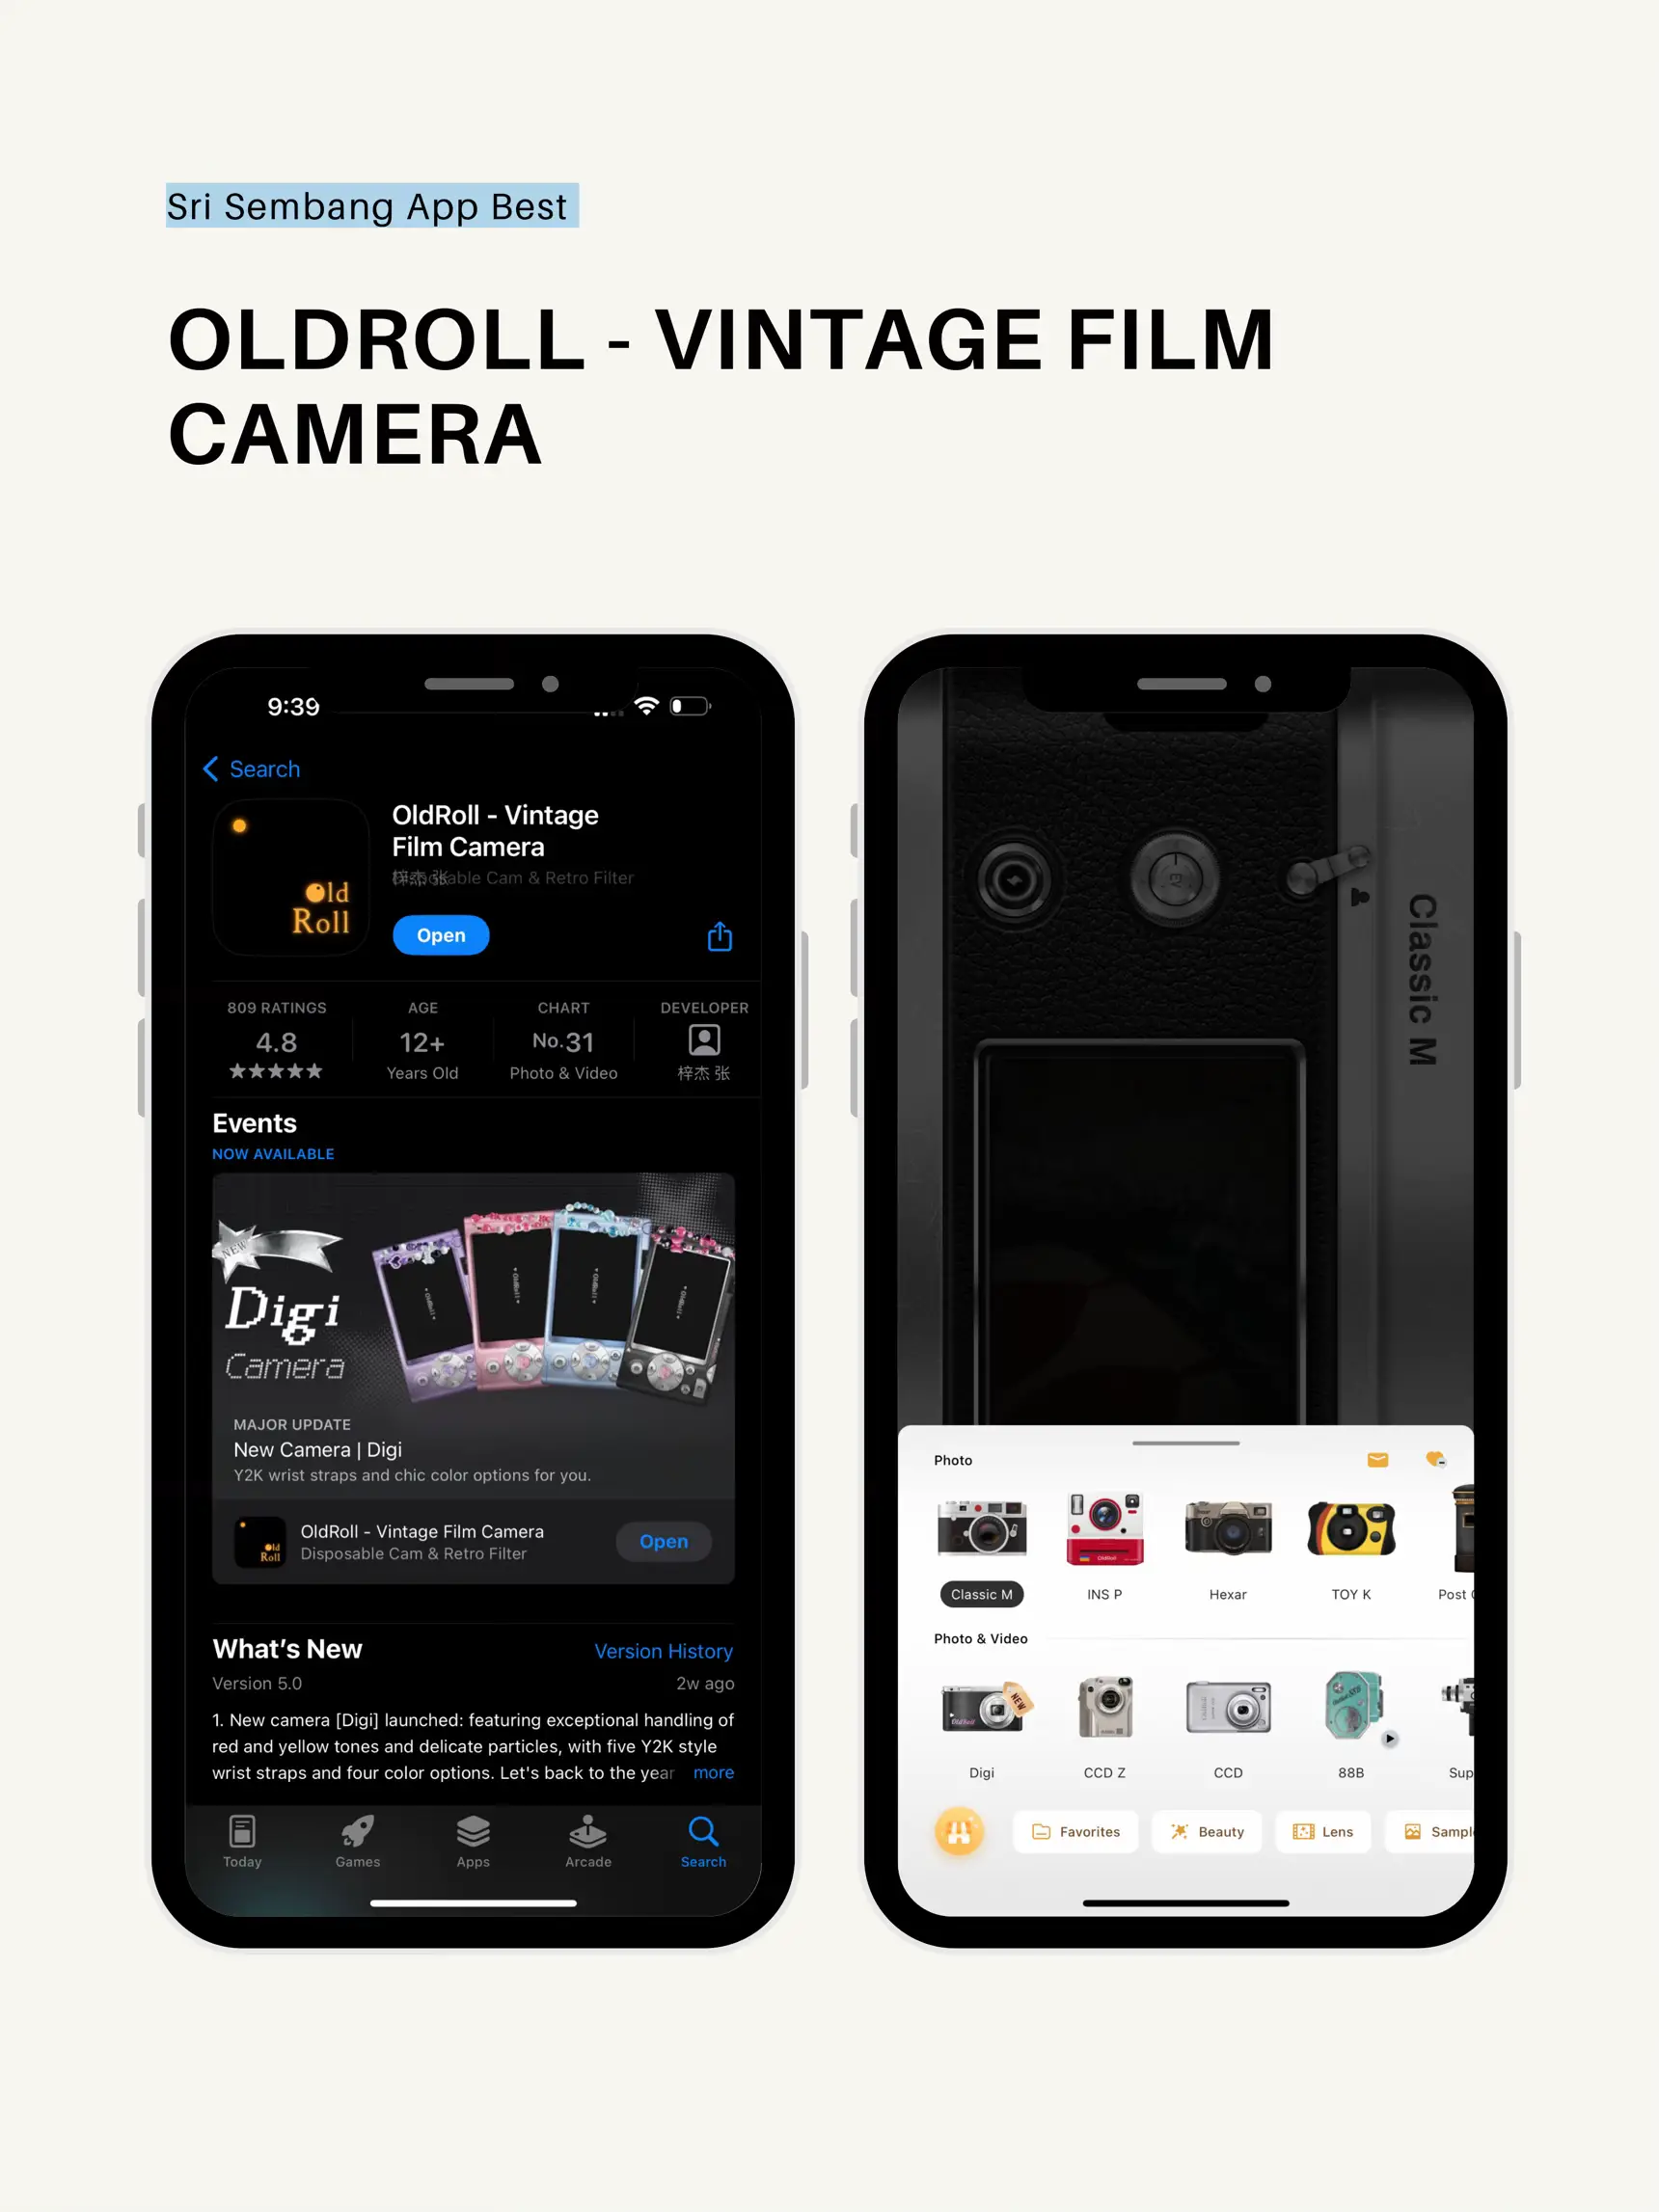 OldRoll - Vintage Film Camera on the App Store